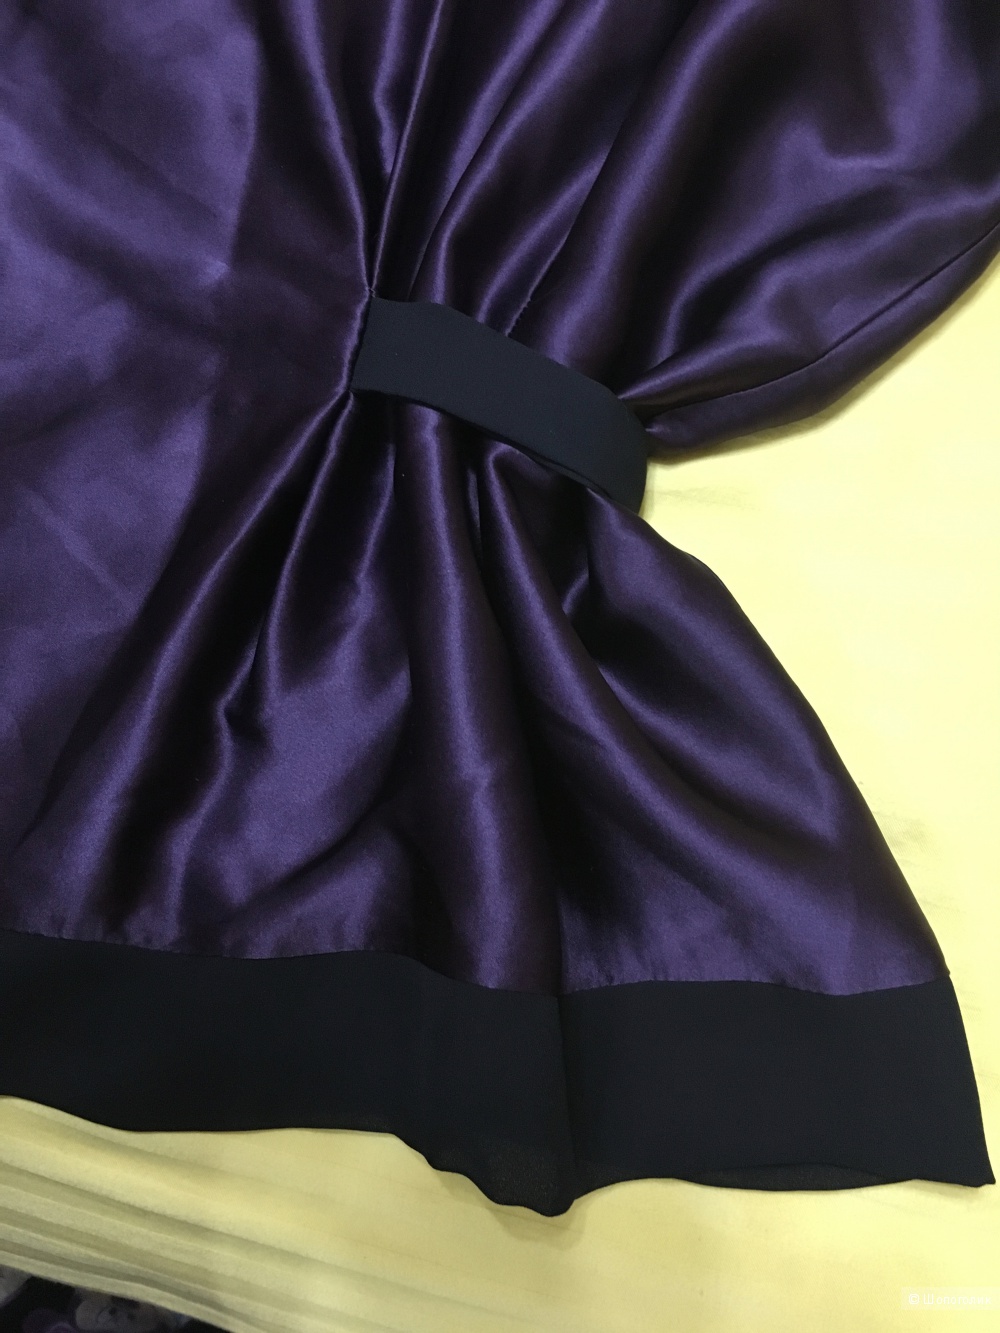 Шелковая блузка LAVINIATURRA, 46 (Российский размер) дизайнер:44 (IT). Темно-фиолетовый